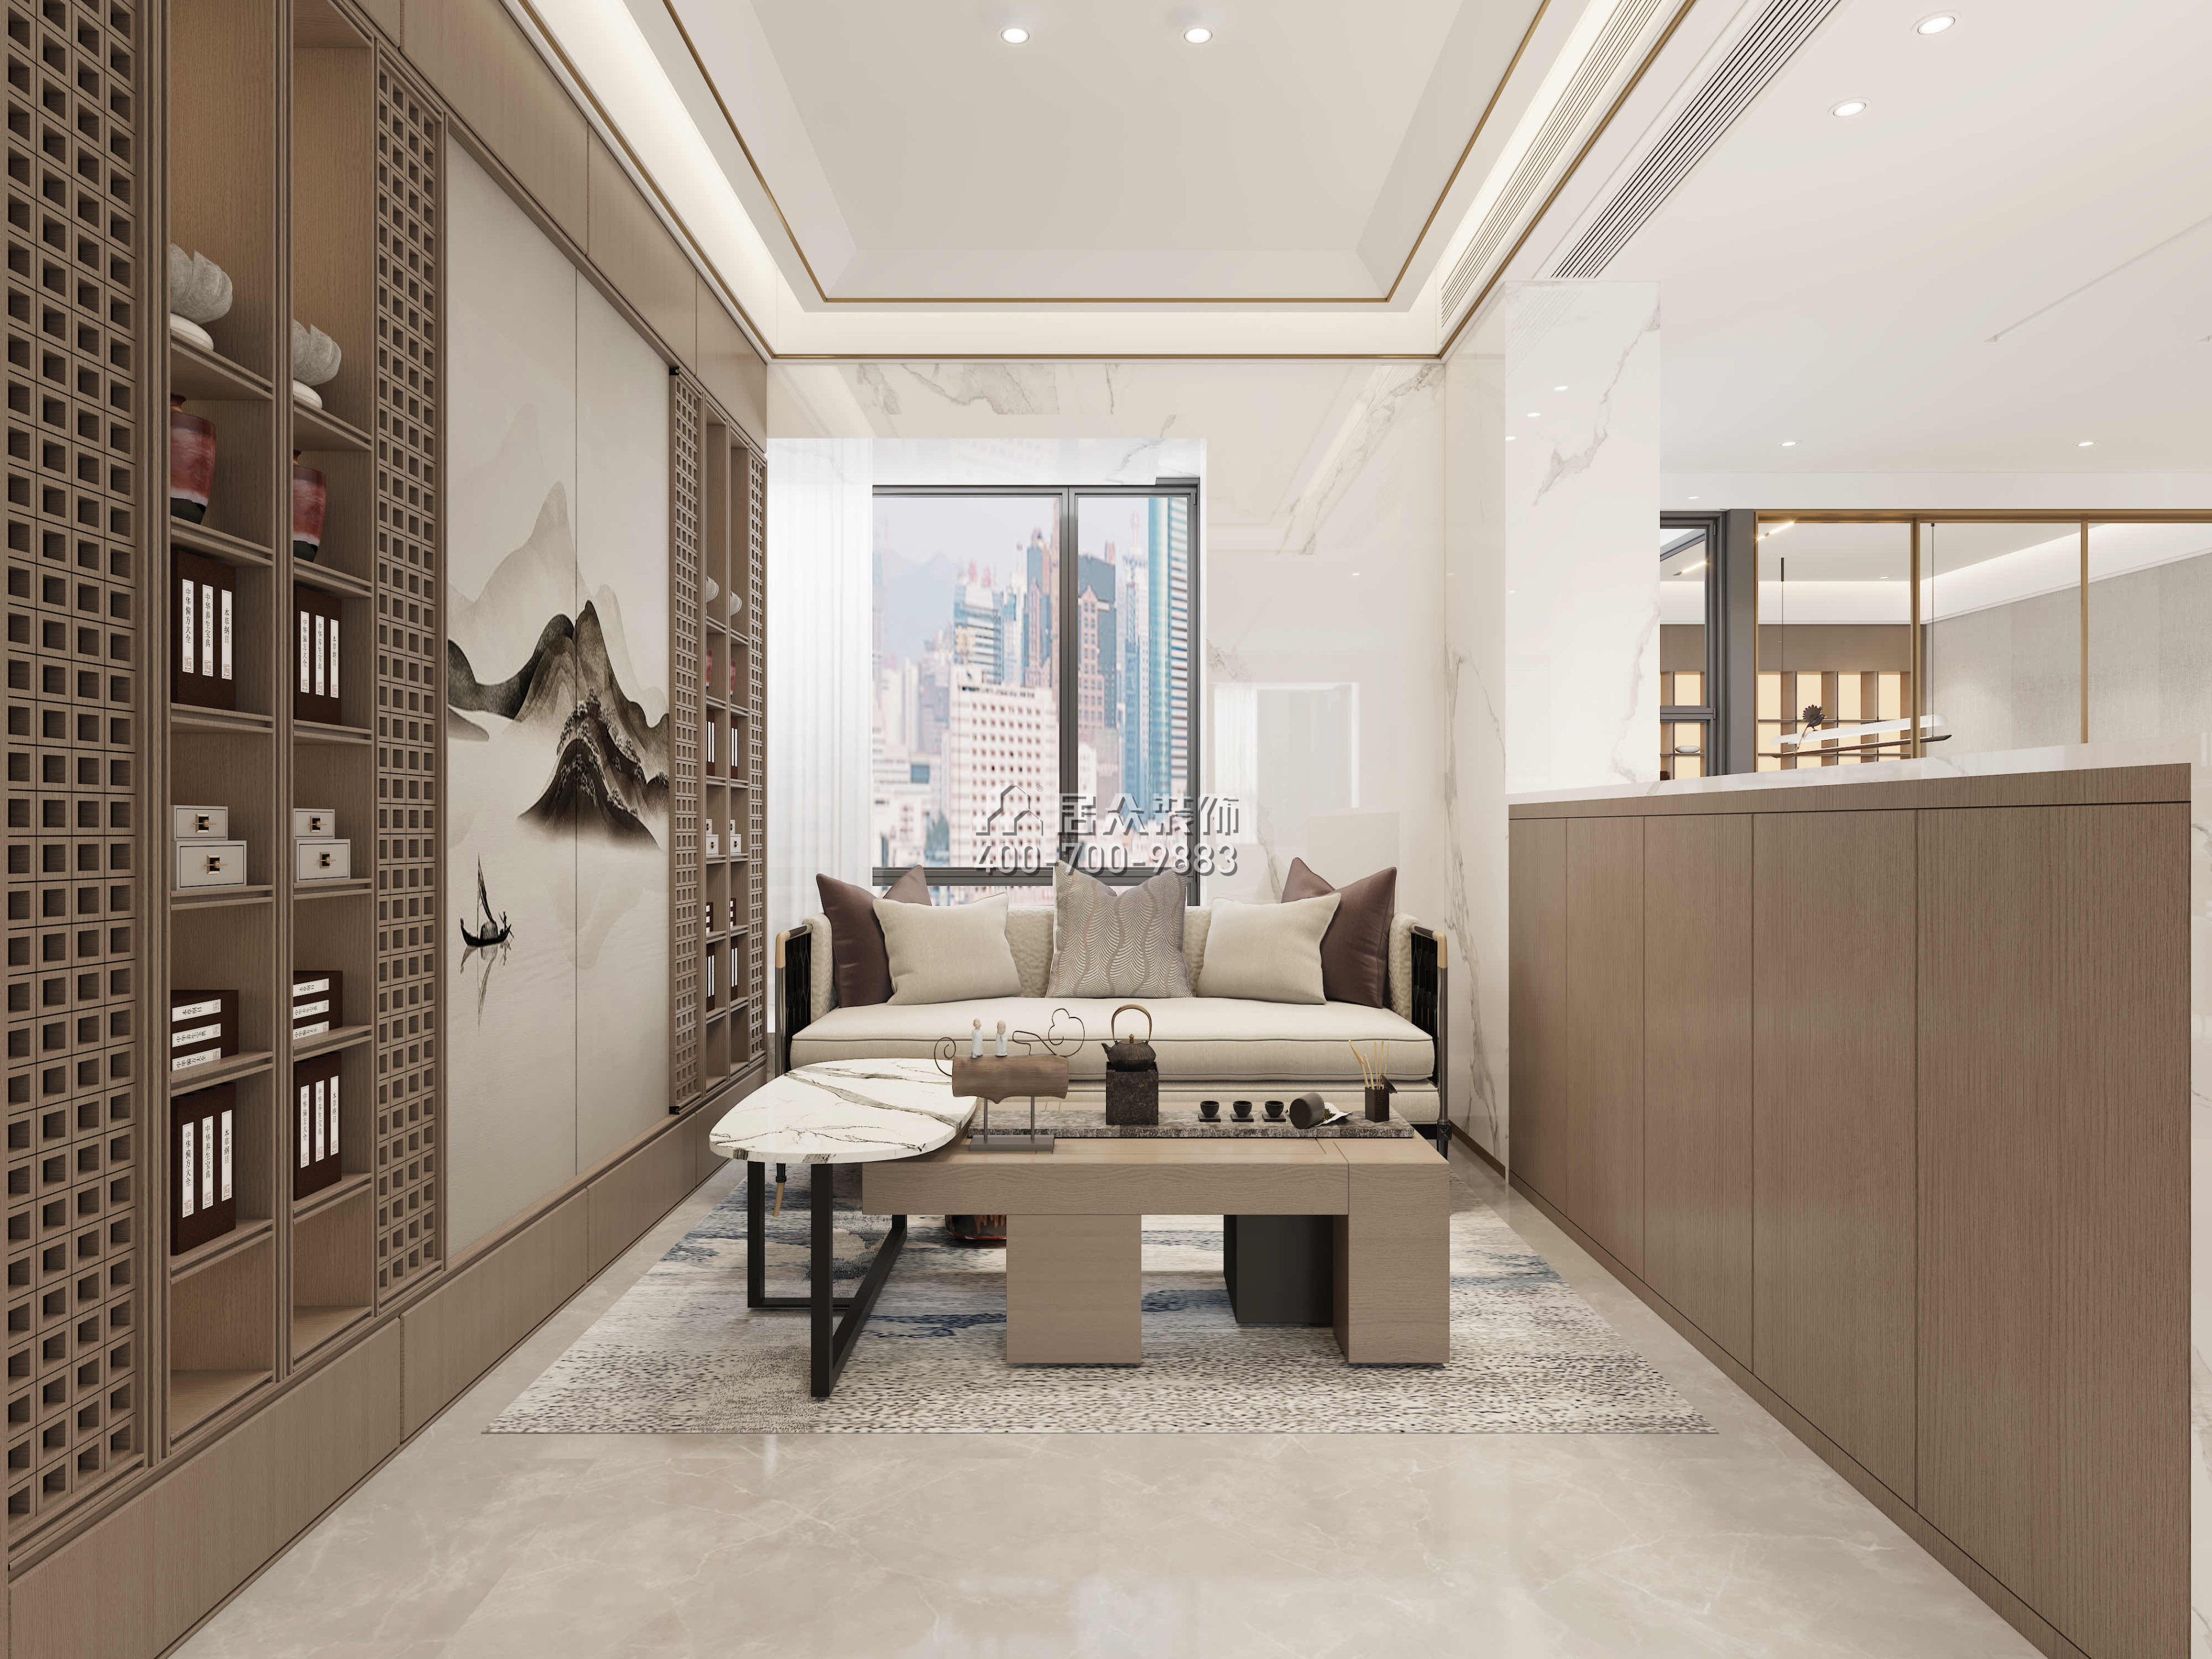 宝利豪庭500平方米中式风格复式户型茶室装修效果图